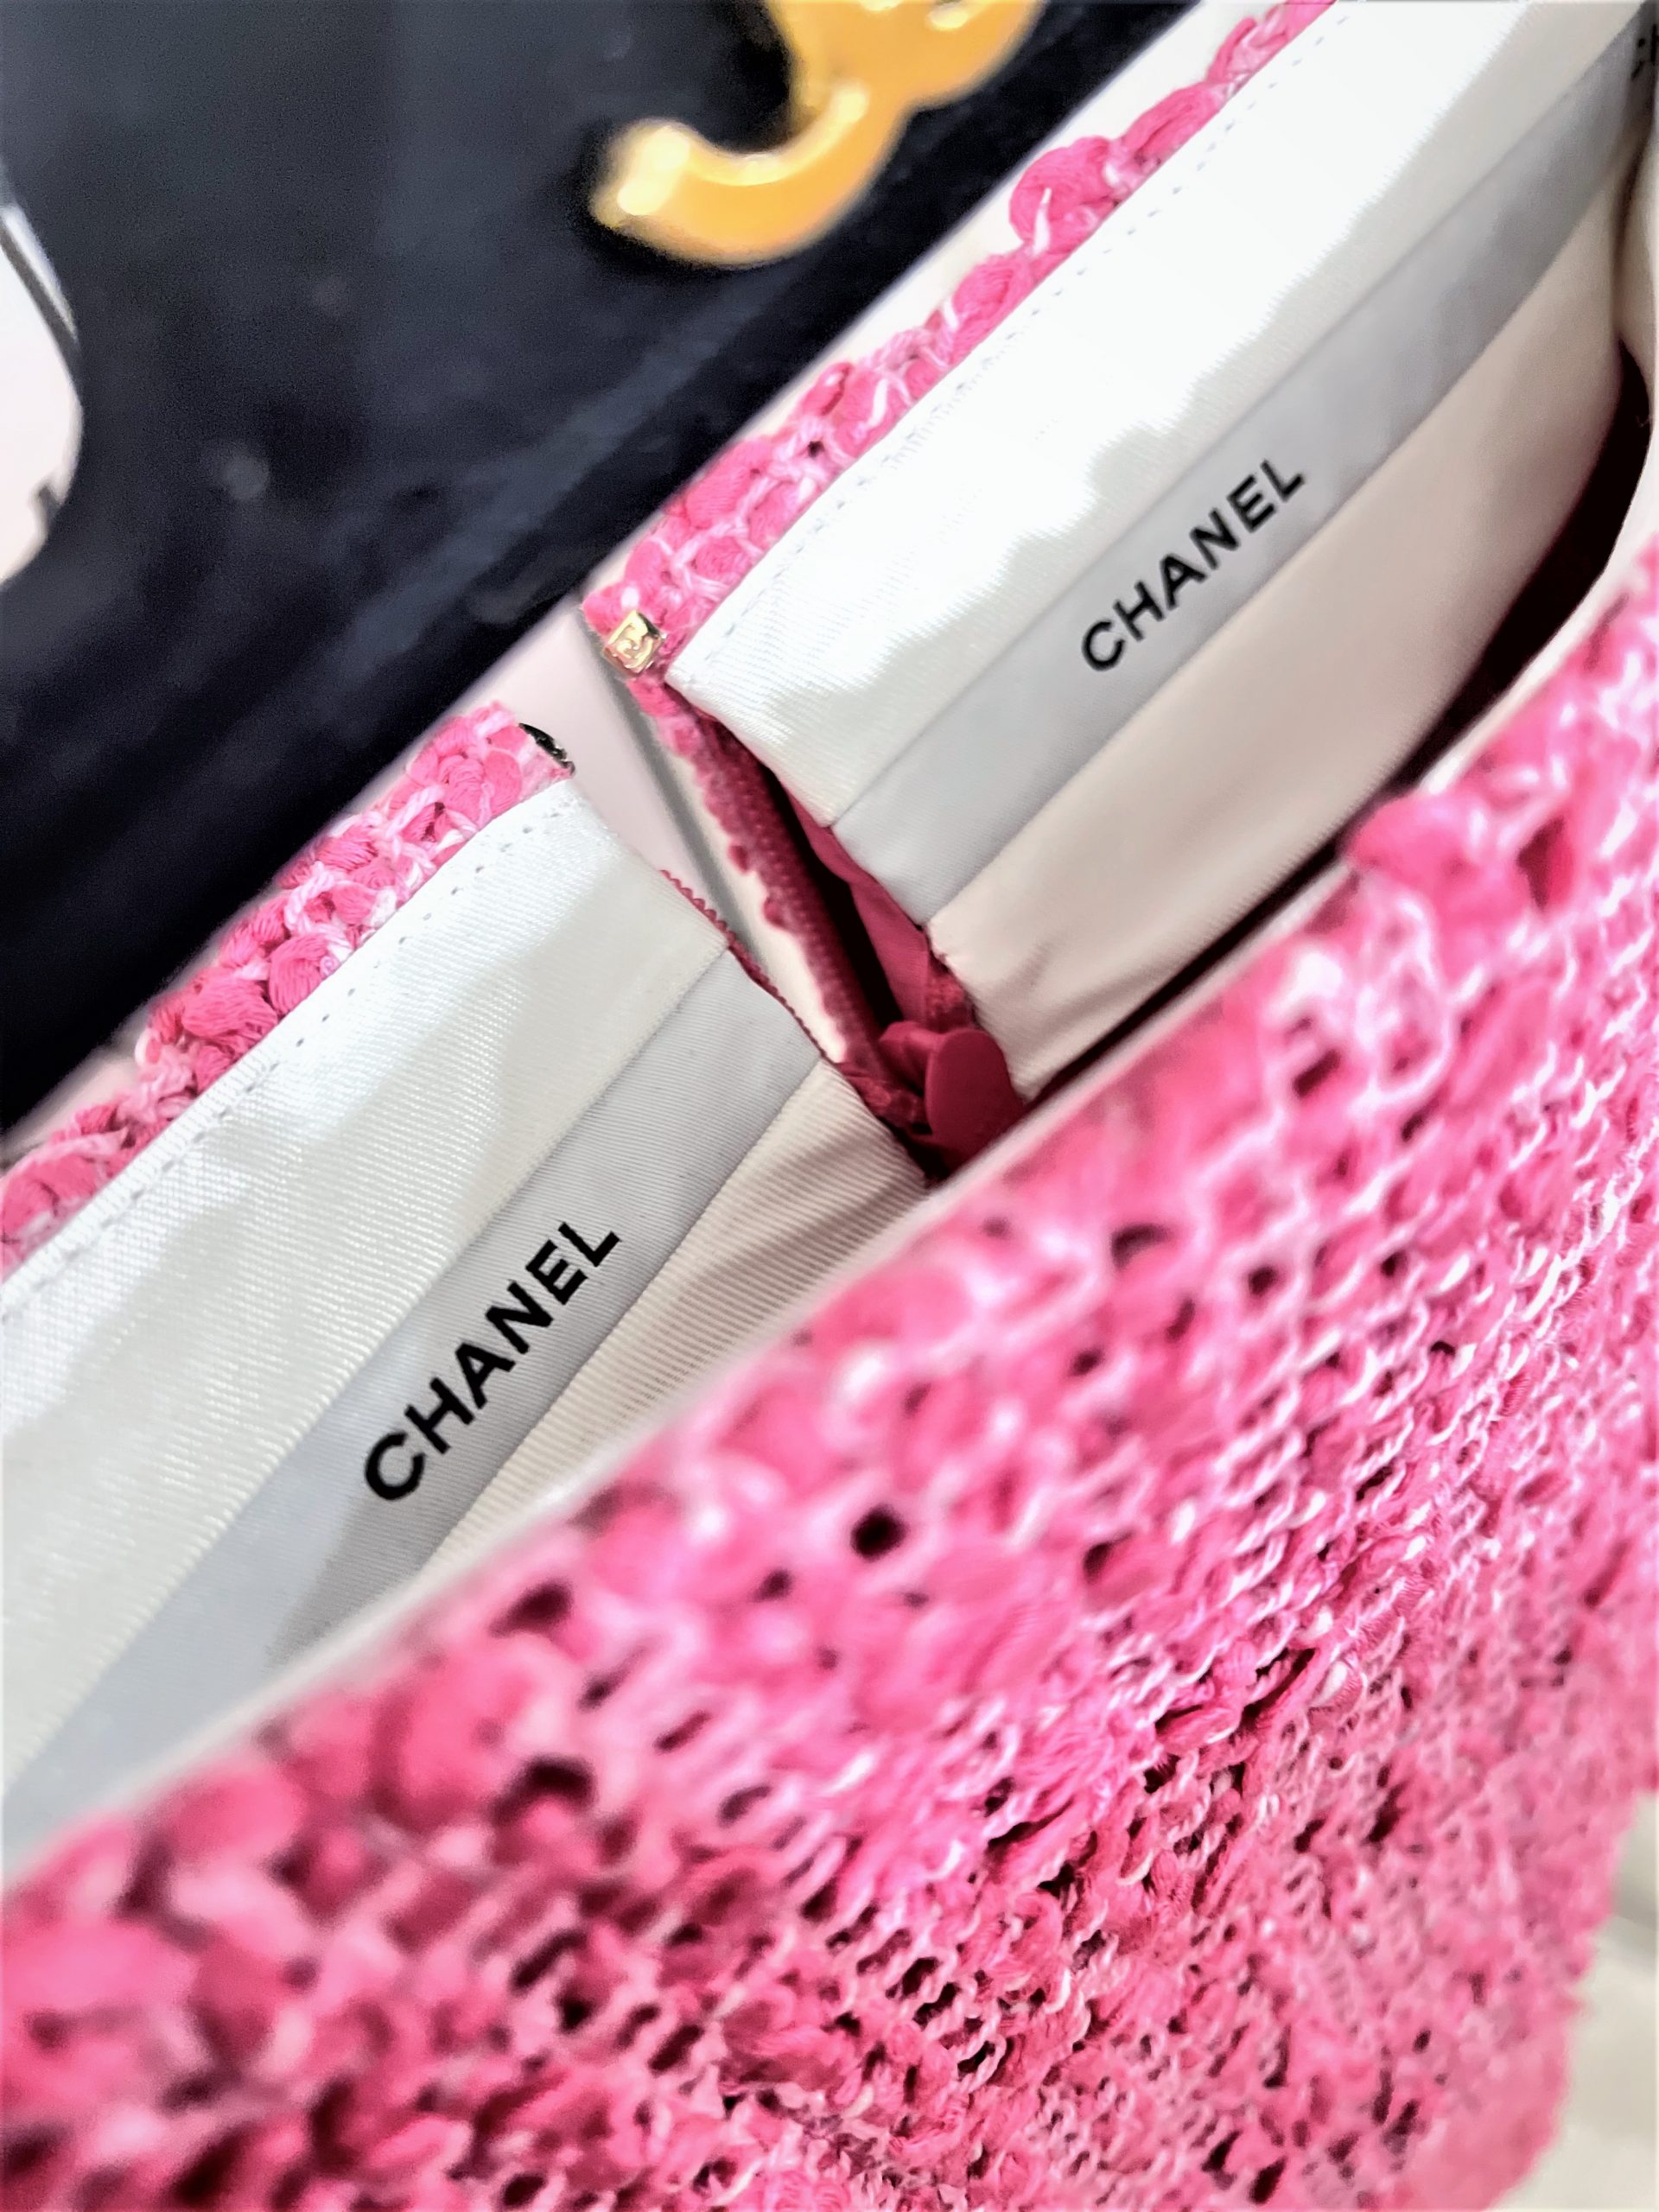 Chanel Total Look – MILNY PARLON